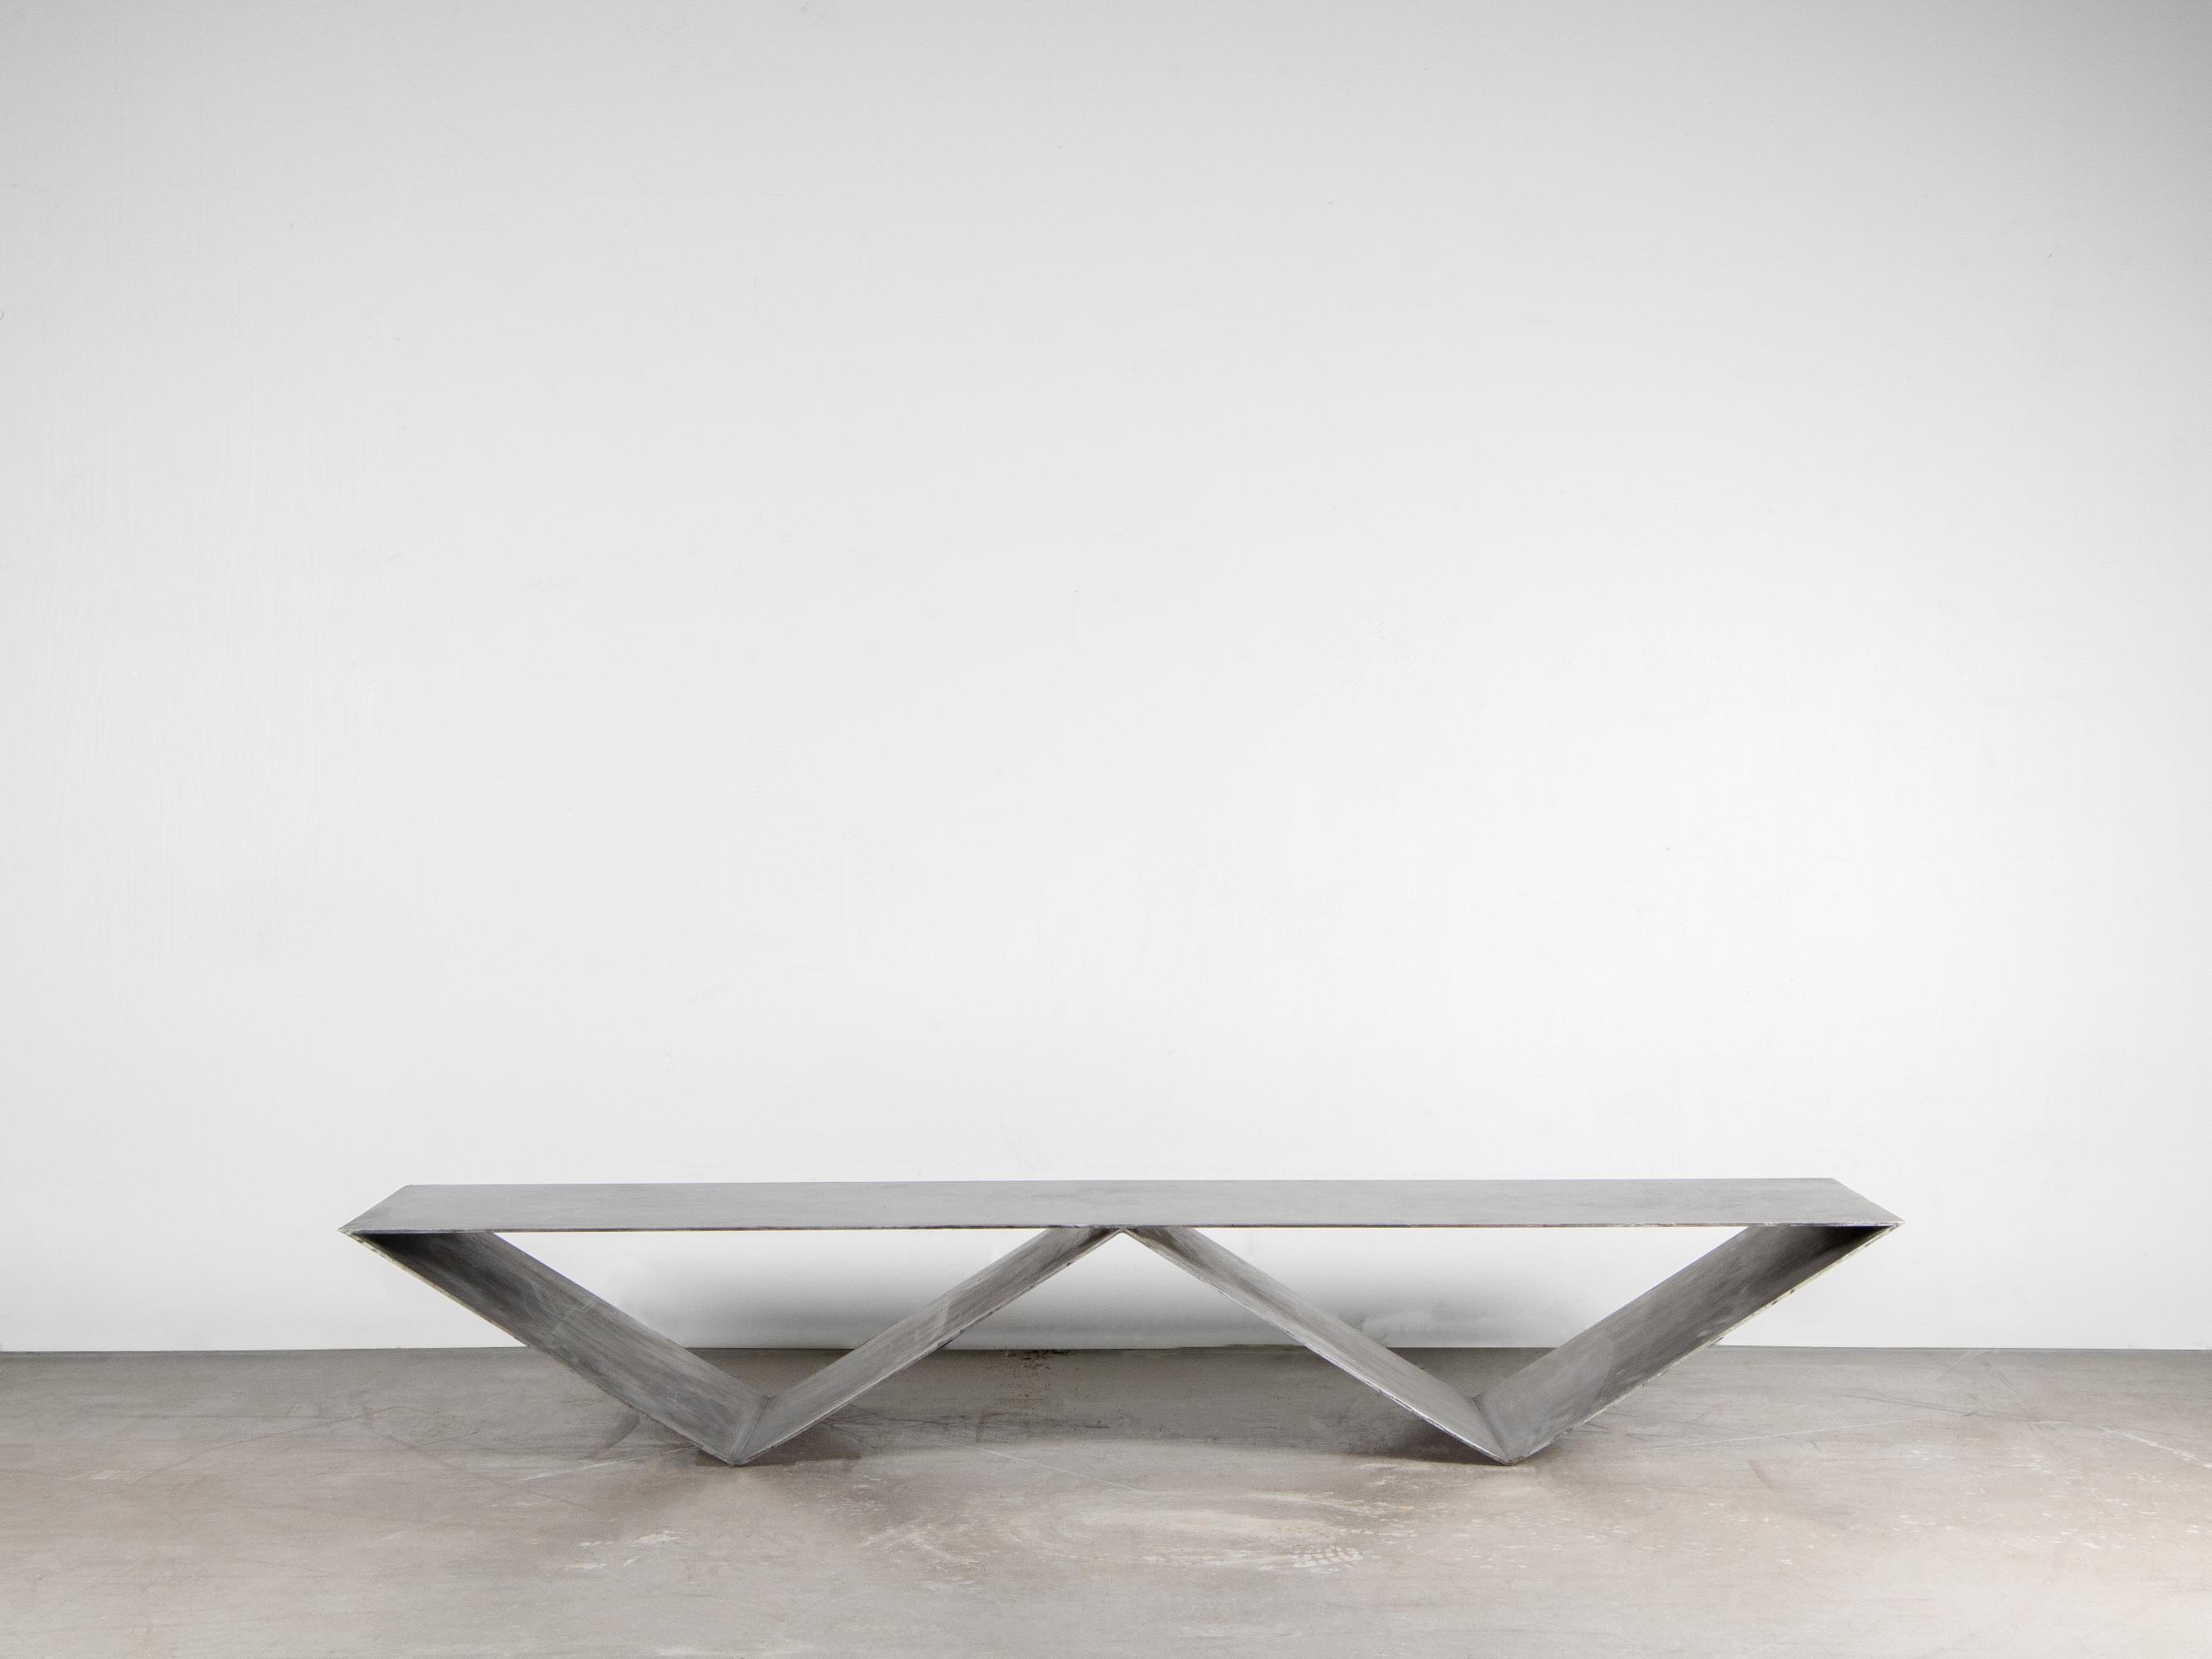 Table de canapé UDD par Lucas Tyra Morten
2019
Edition limitée à 27 exemplaires
Dimensions : L 170, l 45, H 27 cm
MATERIAL : l'aluminium est anodisé à la main, ce qui permet d'obtenir un motif plus organique.

Lors d'une visite au musée juif de New